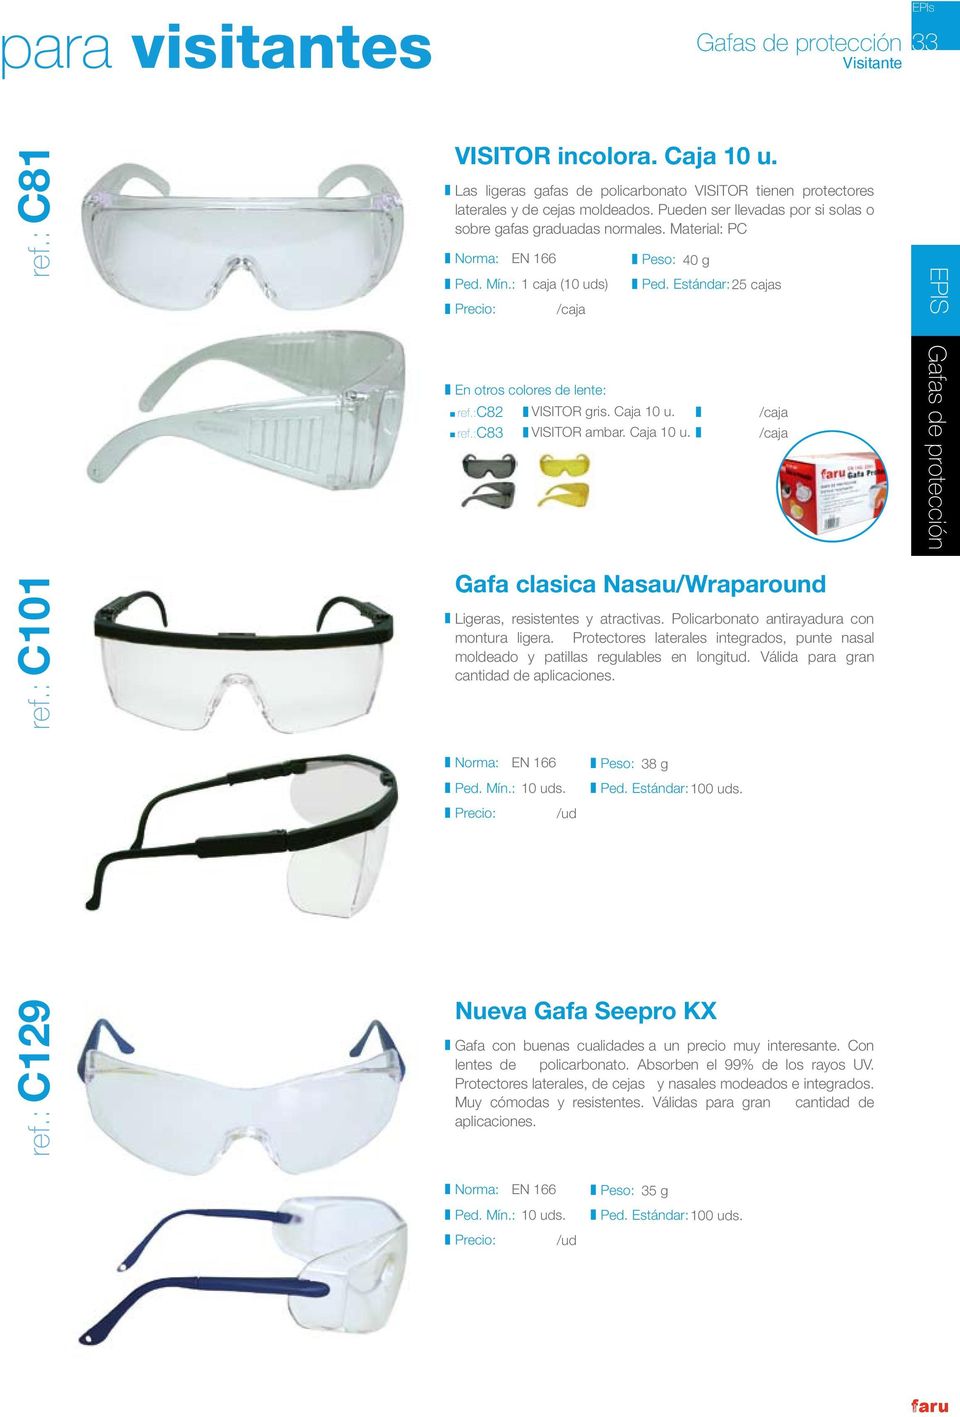 Gafas Seguridad Visión Panorámica, transparentes con ajuste elástico.  UNE-EN 166 skrc, comprar online